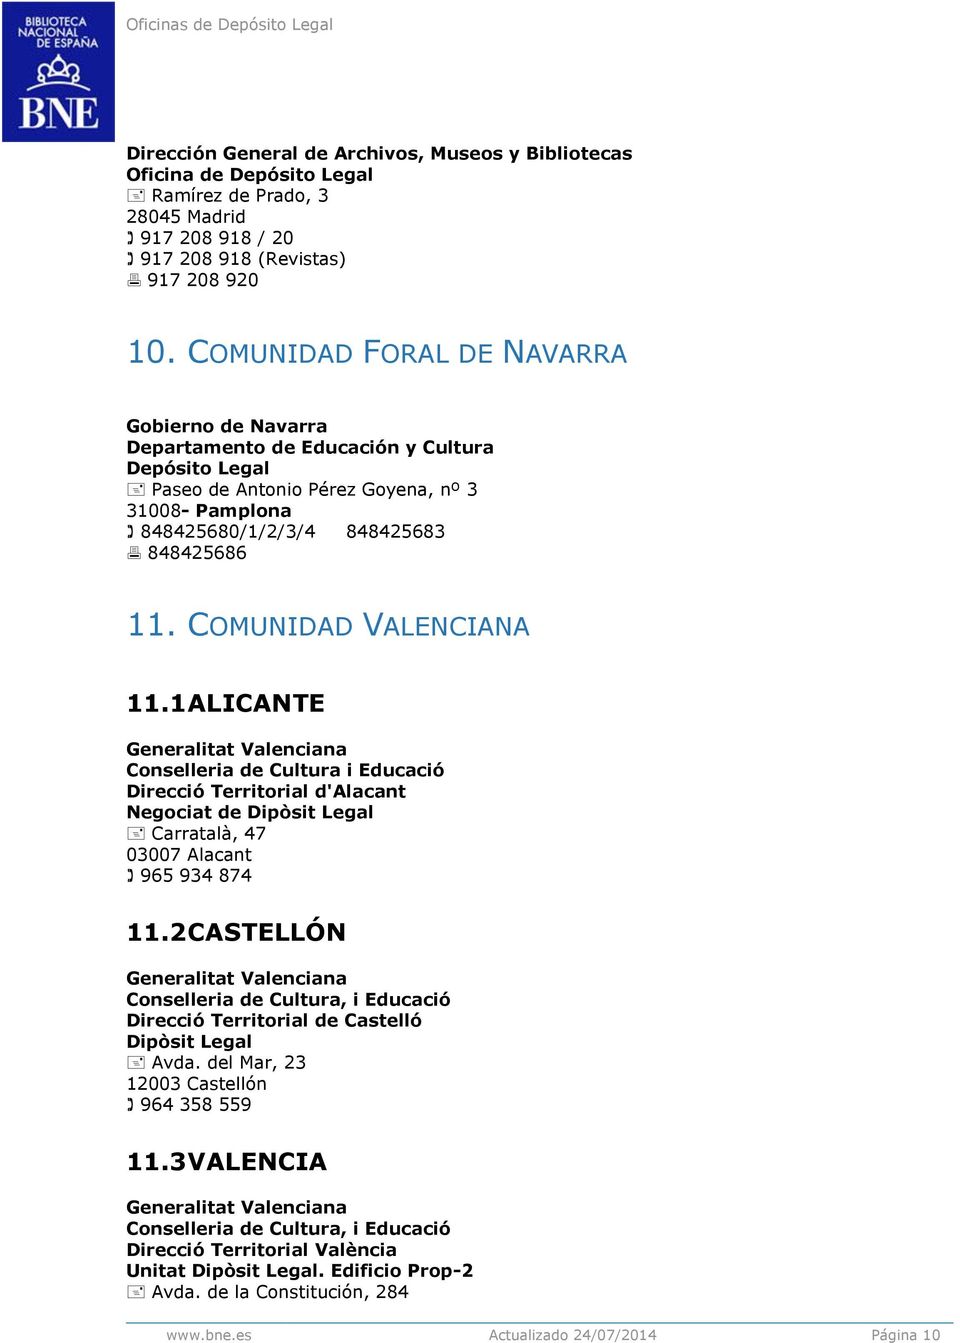 COMUNIDAD VALENCIANA 11.1 ALICANTE Generalitat Valenciana Conselleria de Cultura i Educació Direcció Territorial d'alacant Negociat de Dipòsit Legal Carratalà, 47 03007 Alacant 965 934 874 11.